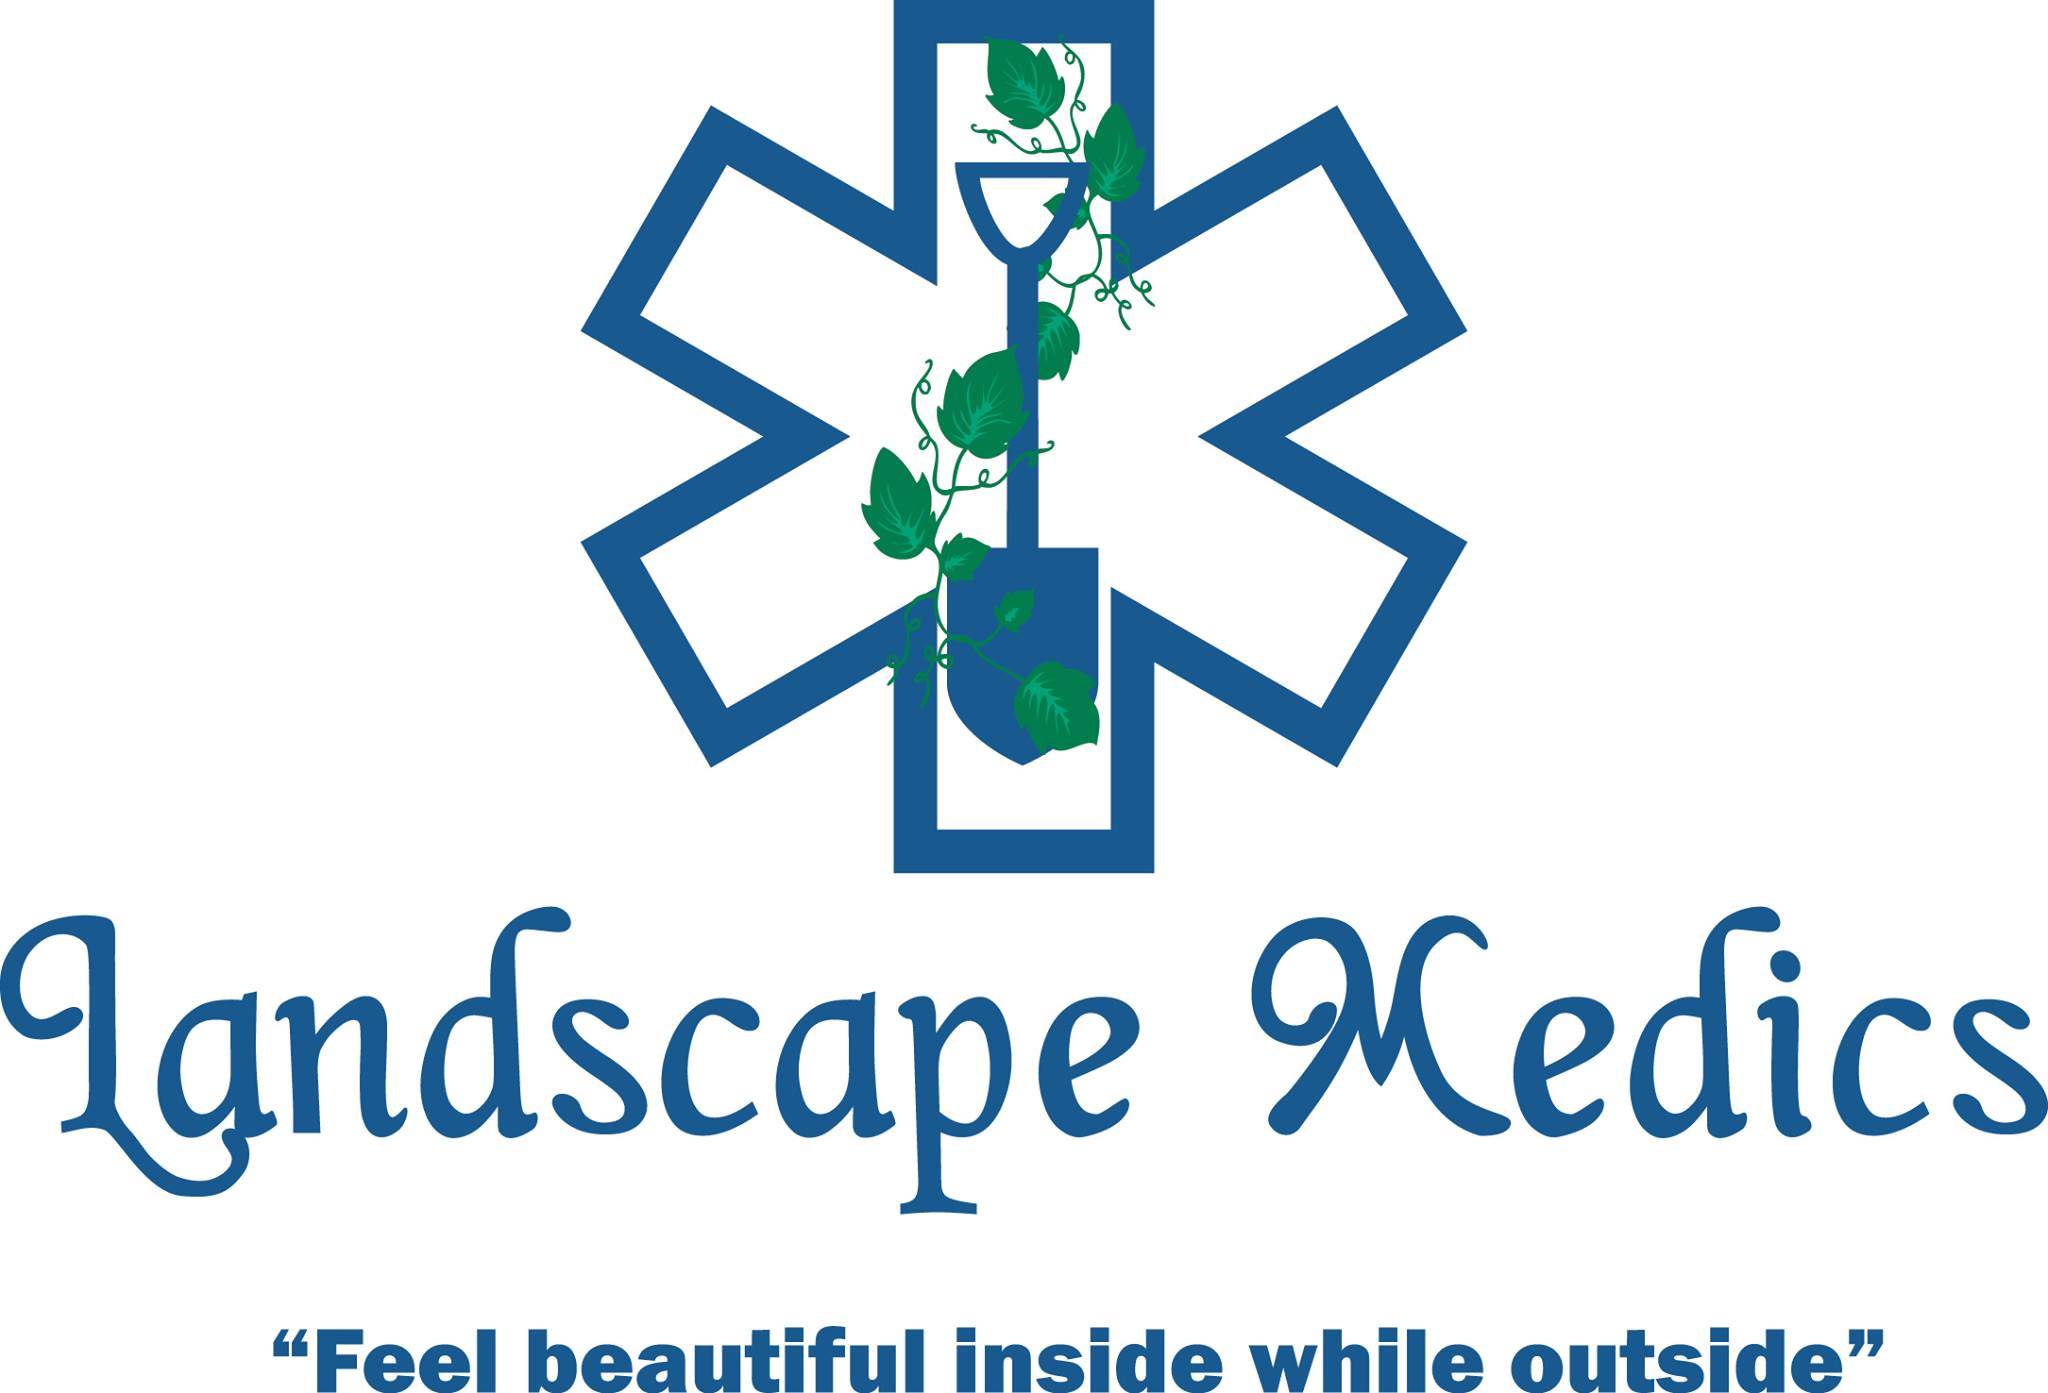 Landscape Medics